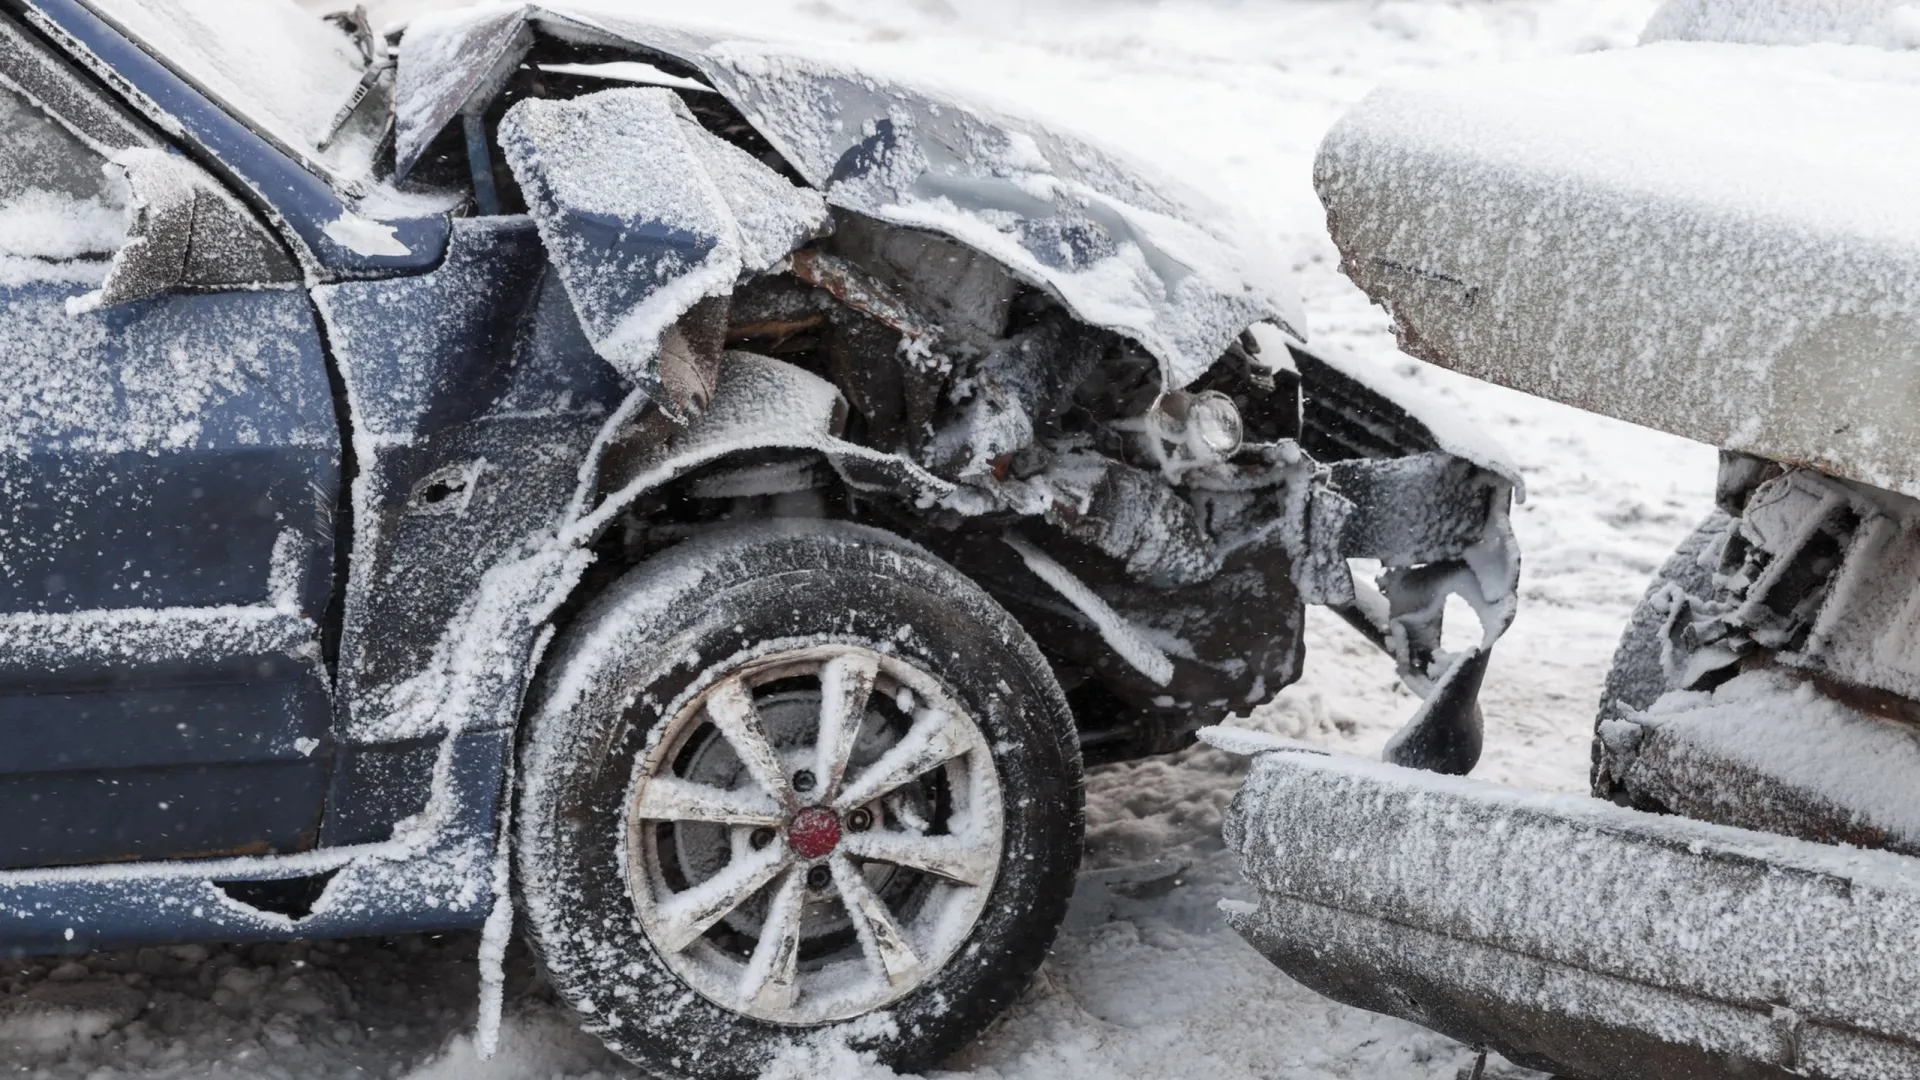 Дорожные инспекторы выясняют причины массовой аварии. Фото: Evannovostro / Shutterstock / Fotodom